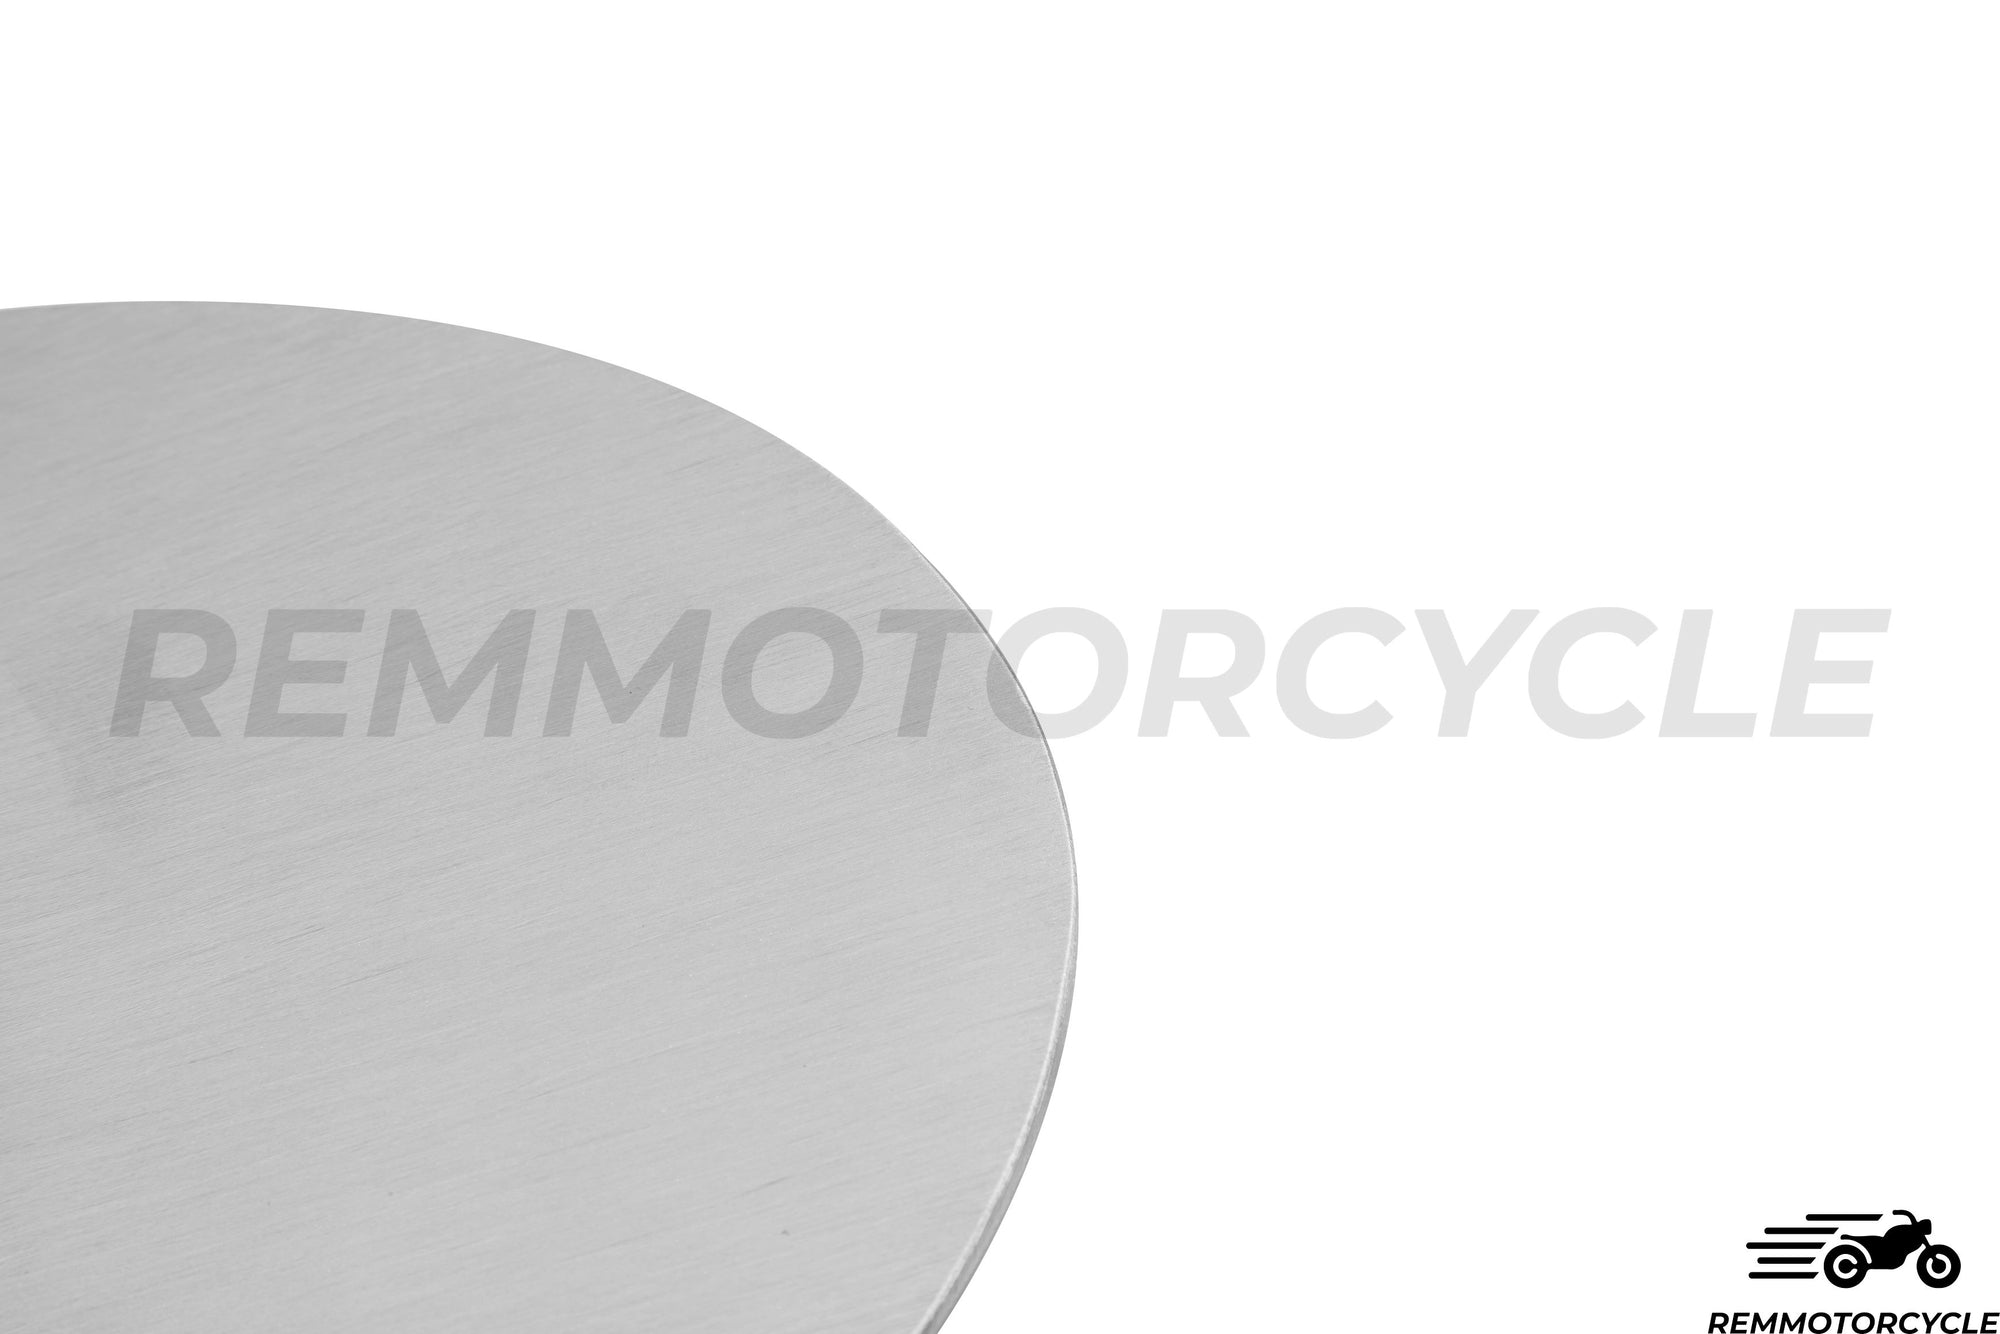 Piastra laterale ovale in alluminio